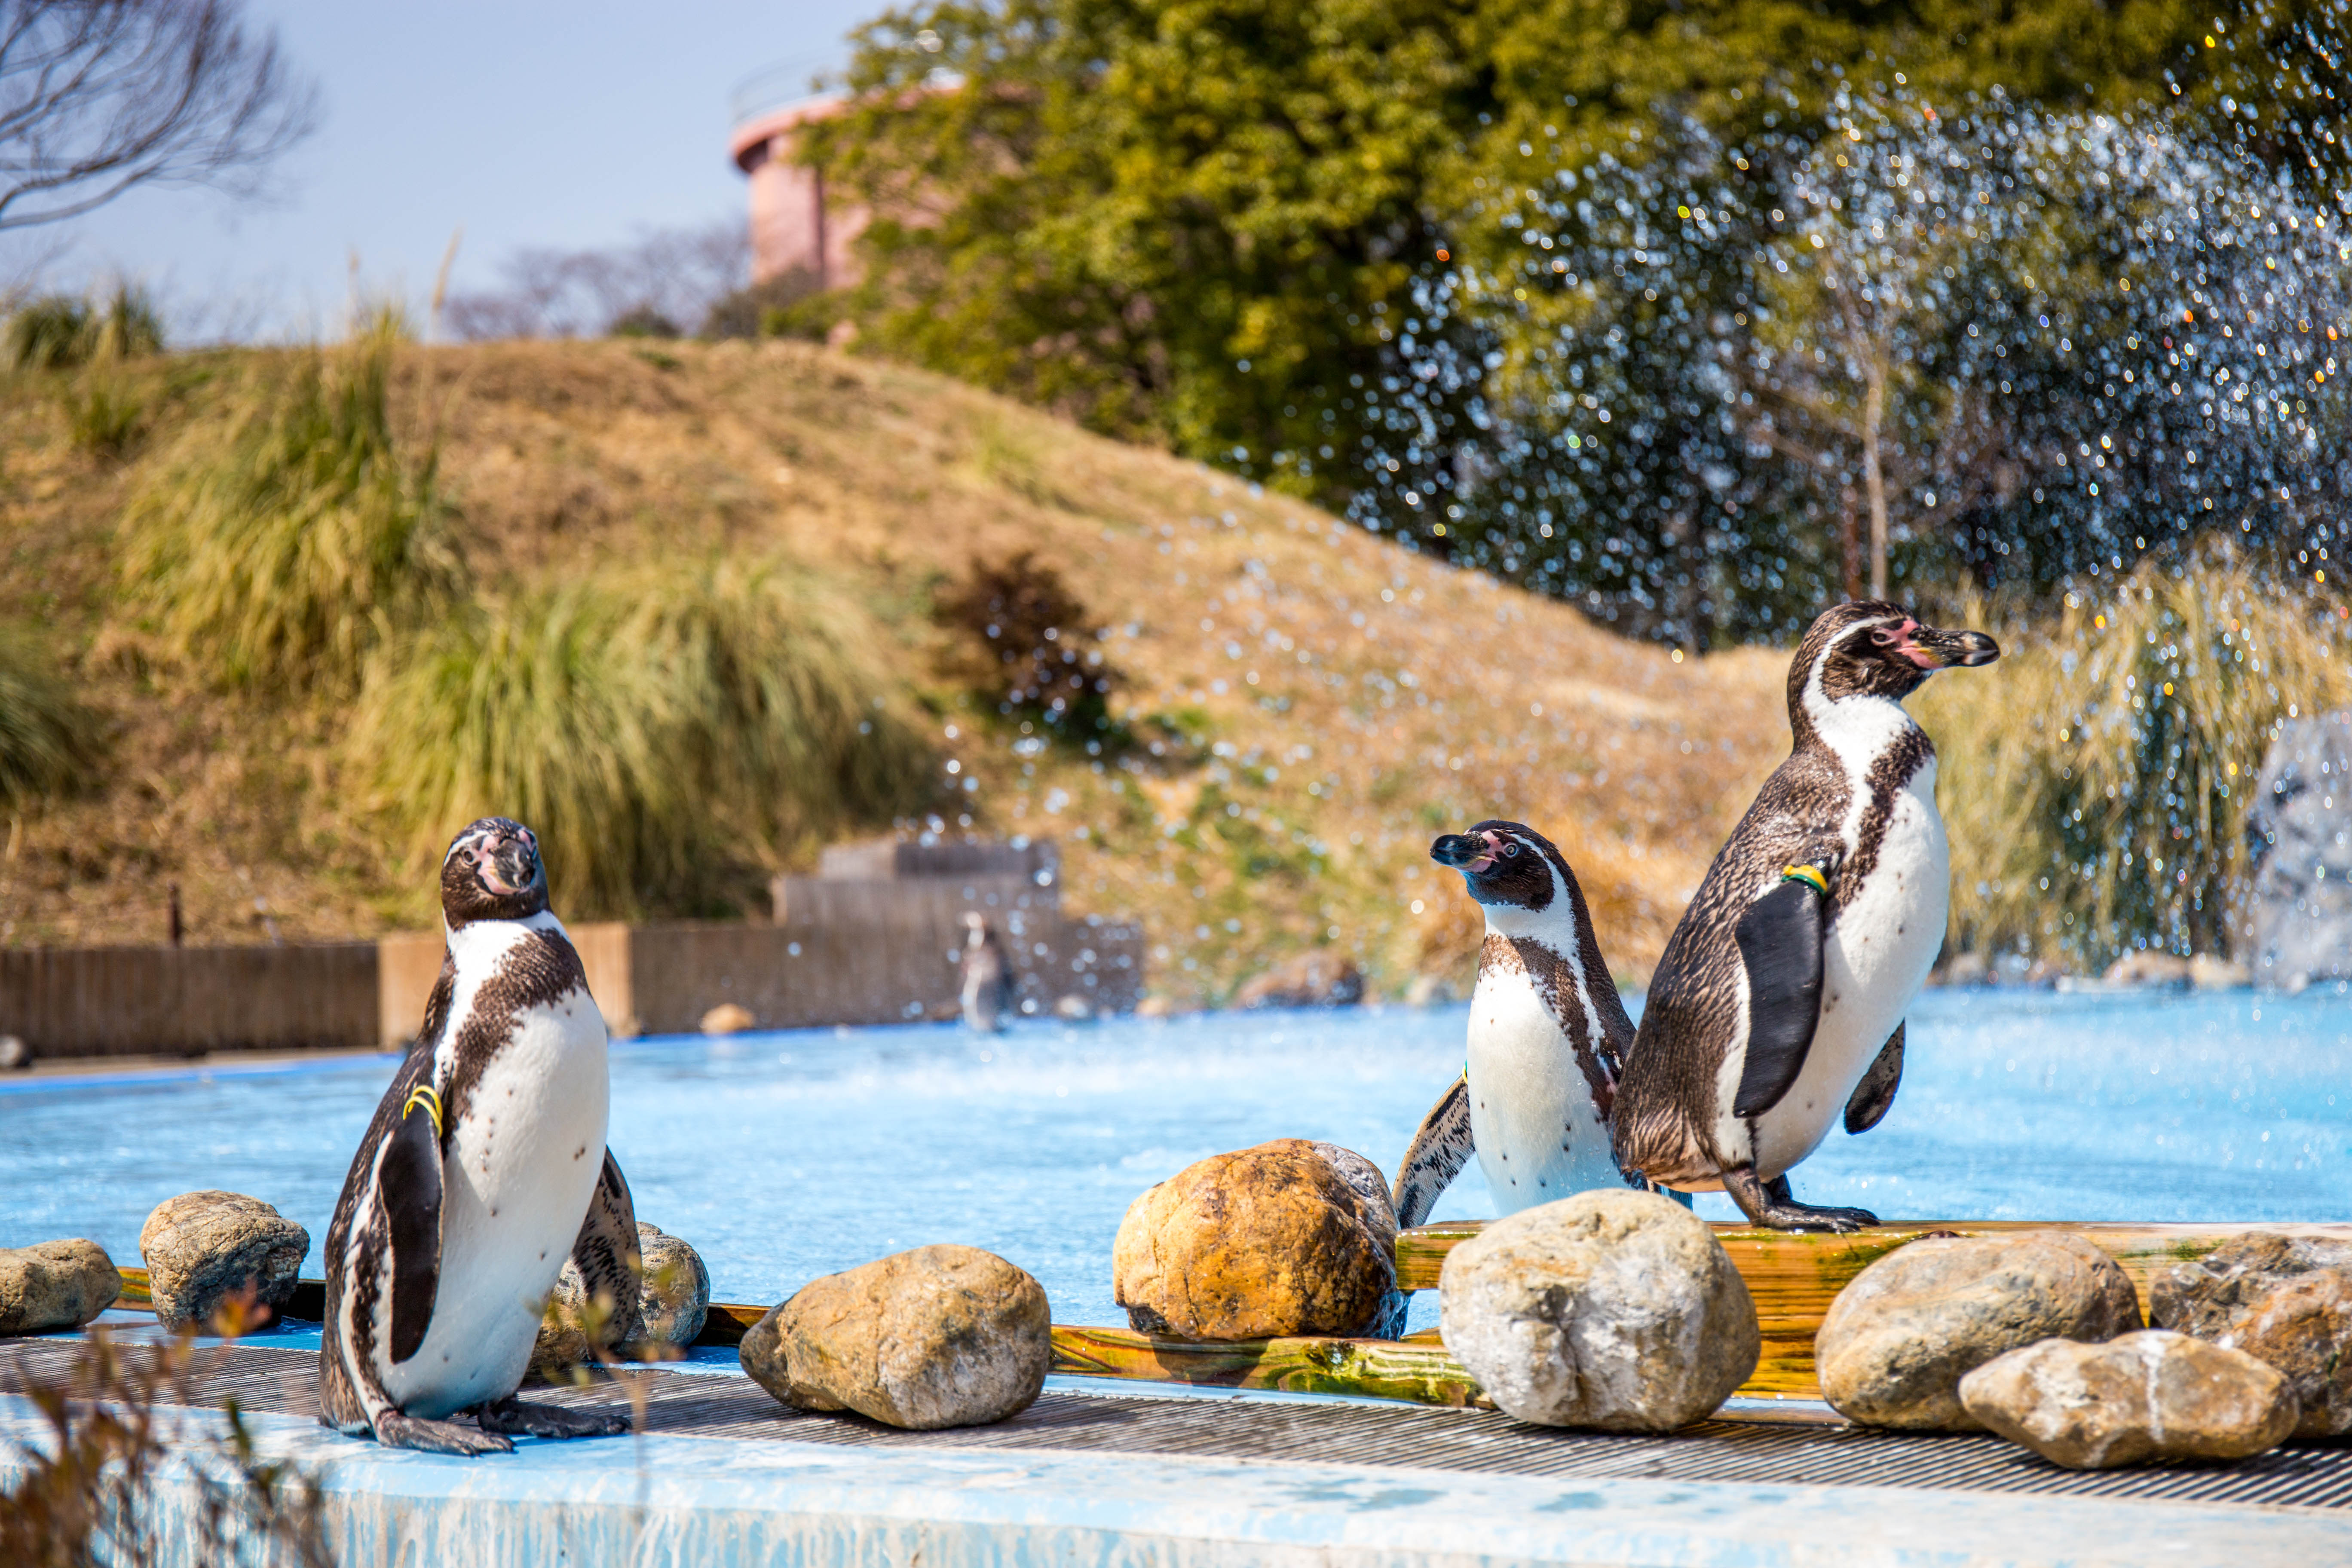 埼玉県こども動物自然公園の フンボルトペンギン 撮影記録写真 18 03 13 うさログ